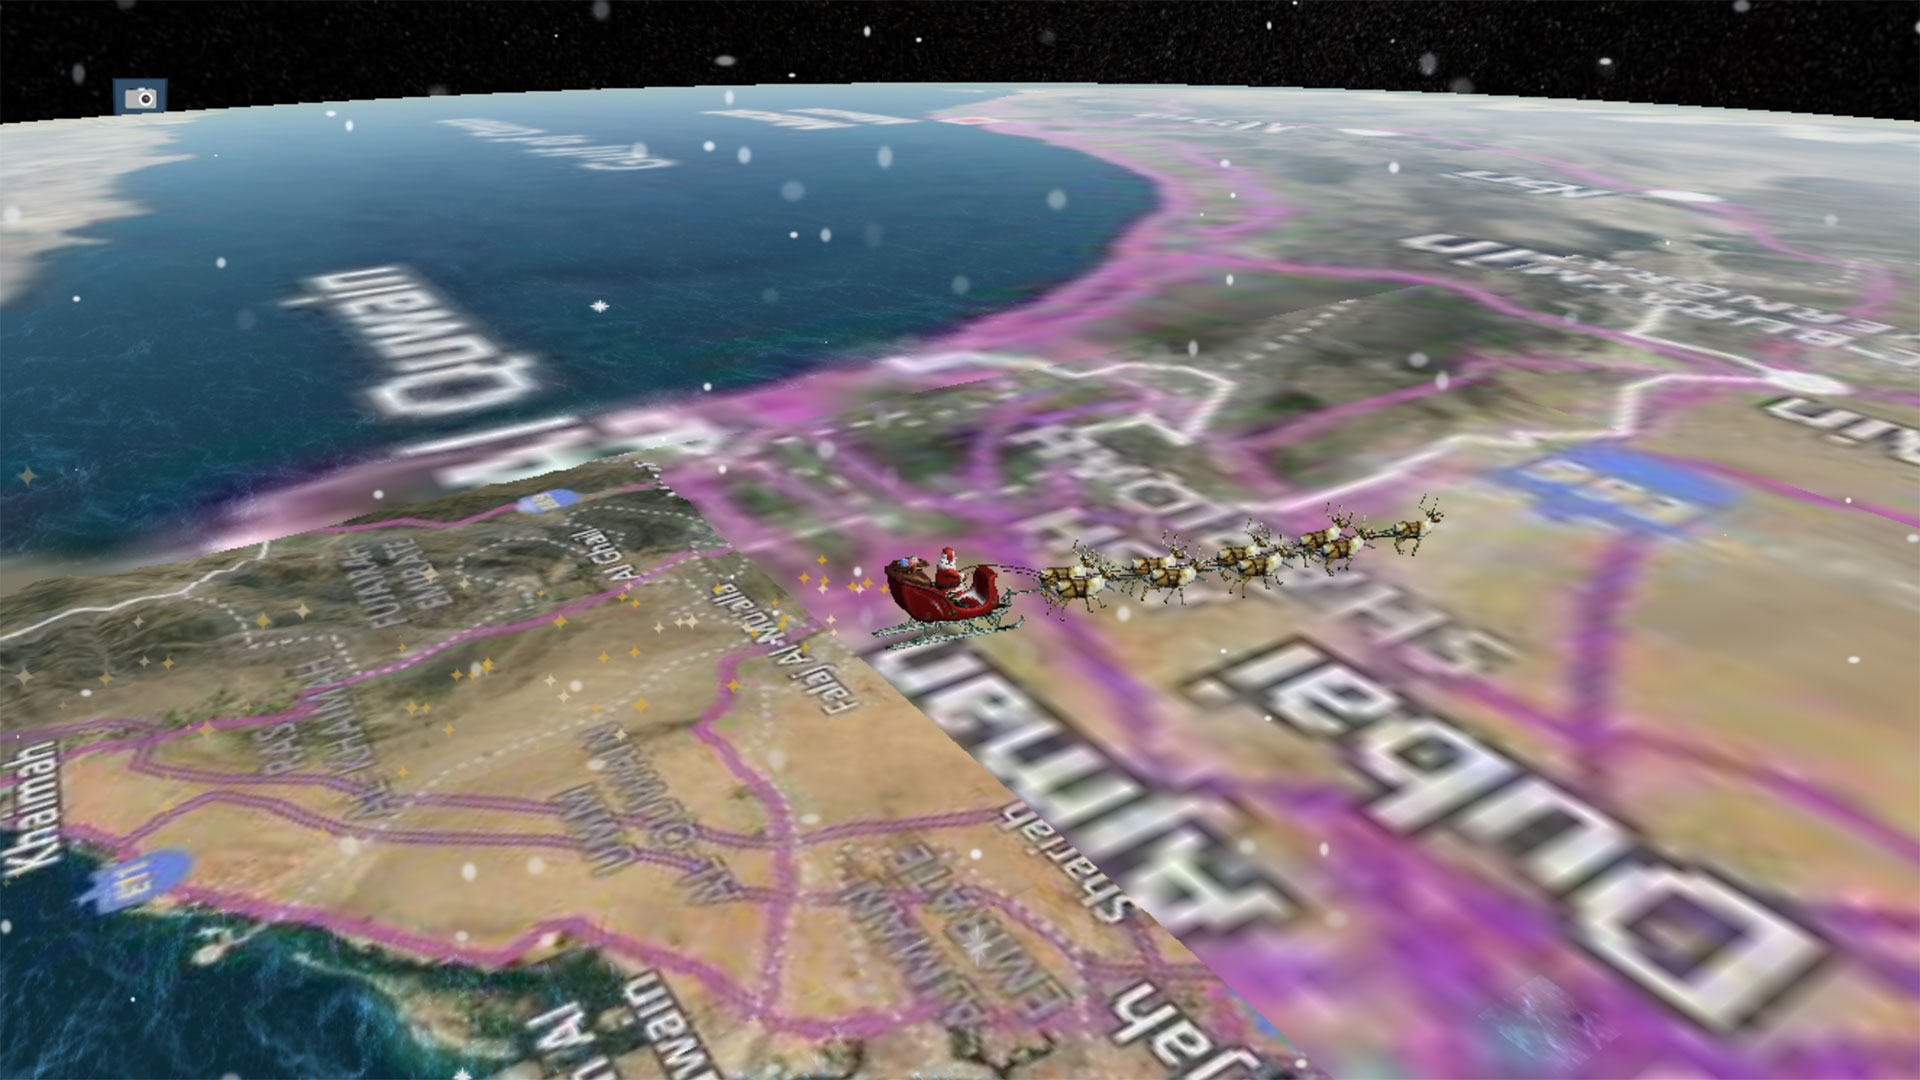 Santa heading towards Dubai on the NORAD Santa tracker